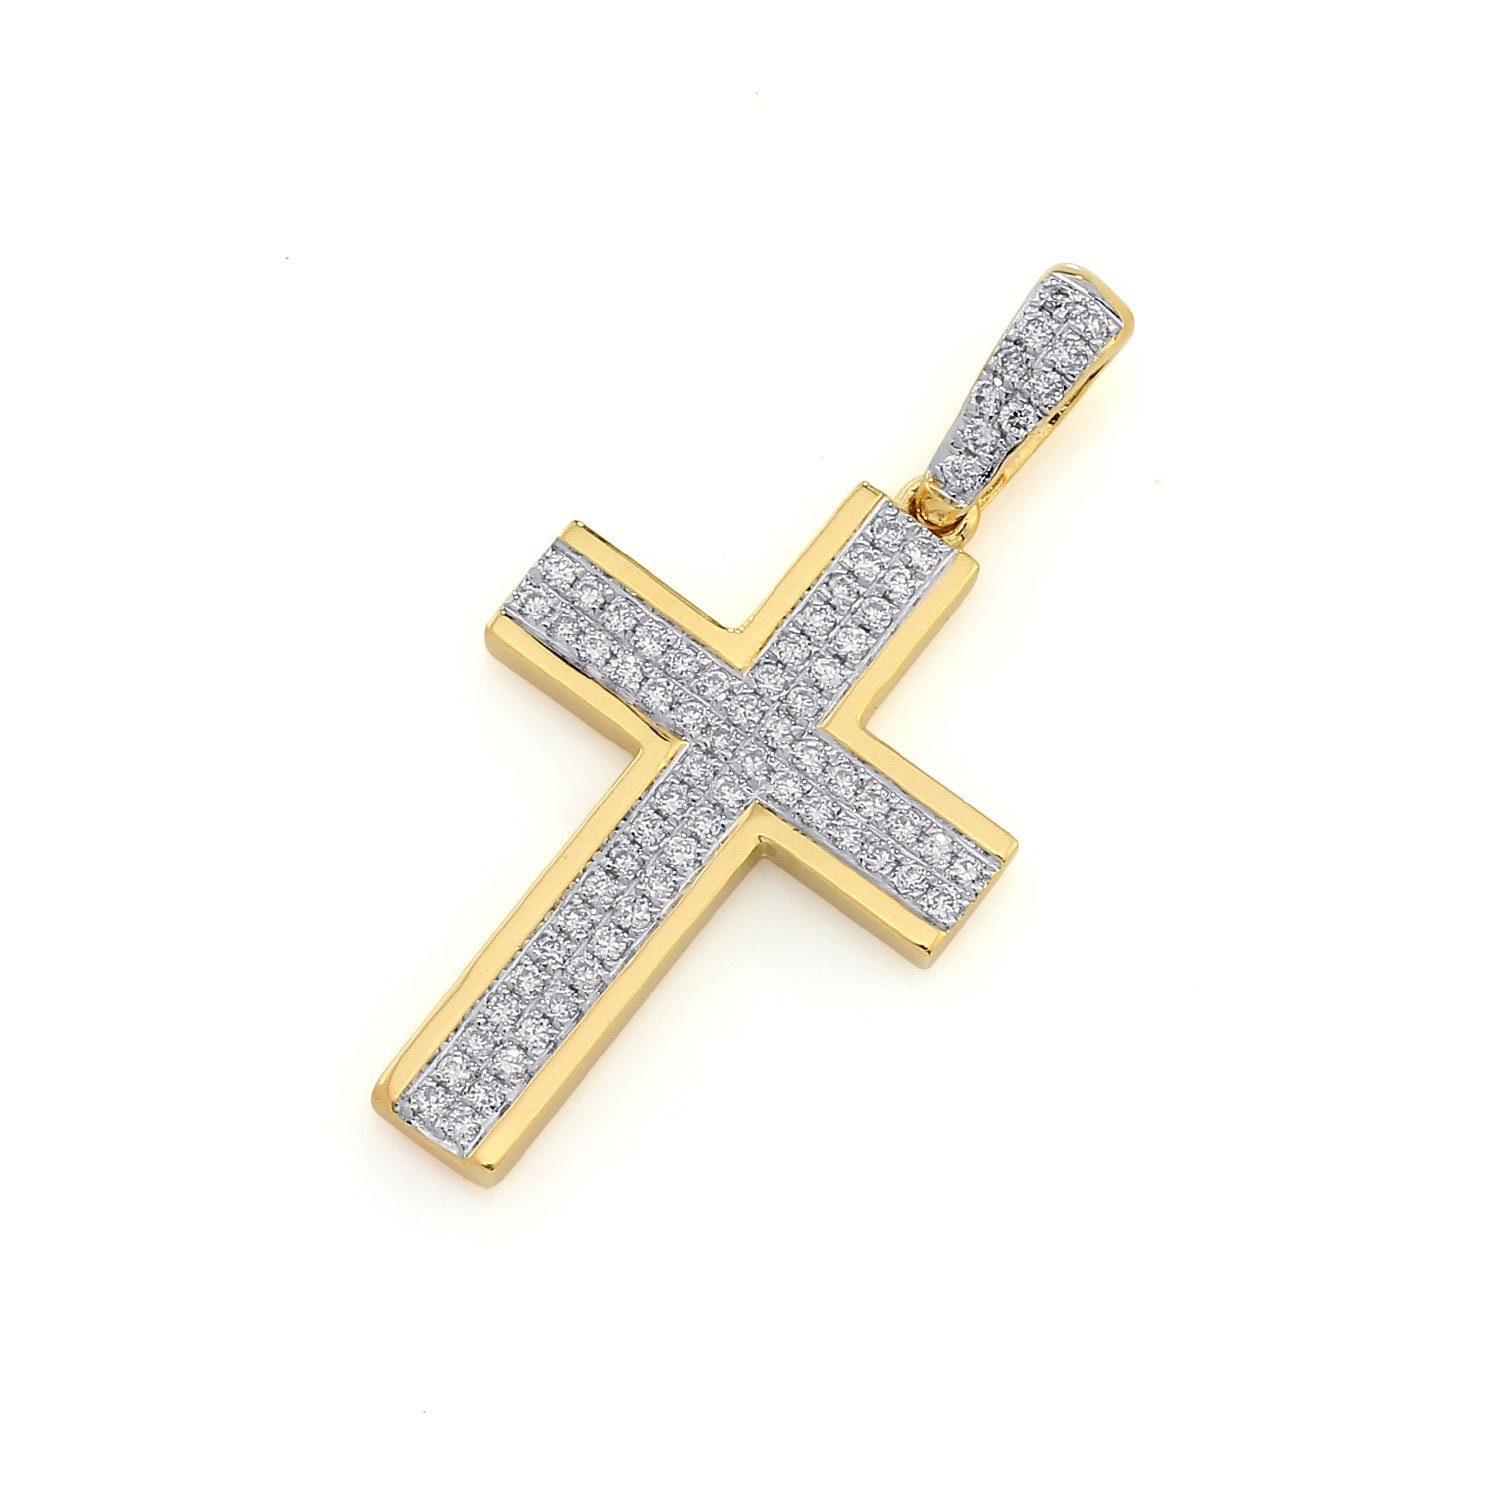 Stella-Jewellery Collier 750er Gold Kreuzanhänger mit 74xBrill. ca. 0,16ct. (inkl. Etui), Diamanten Kreuz Brillant